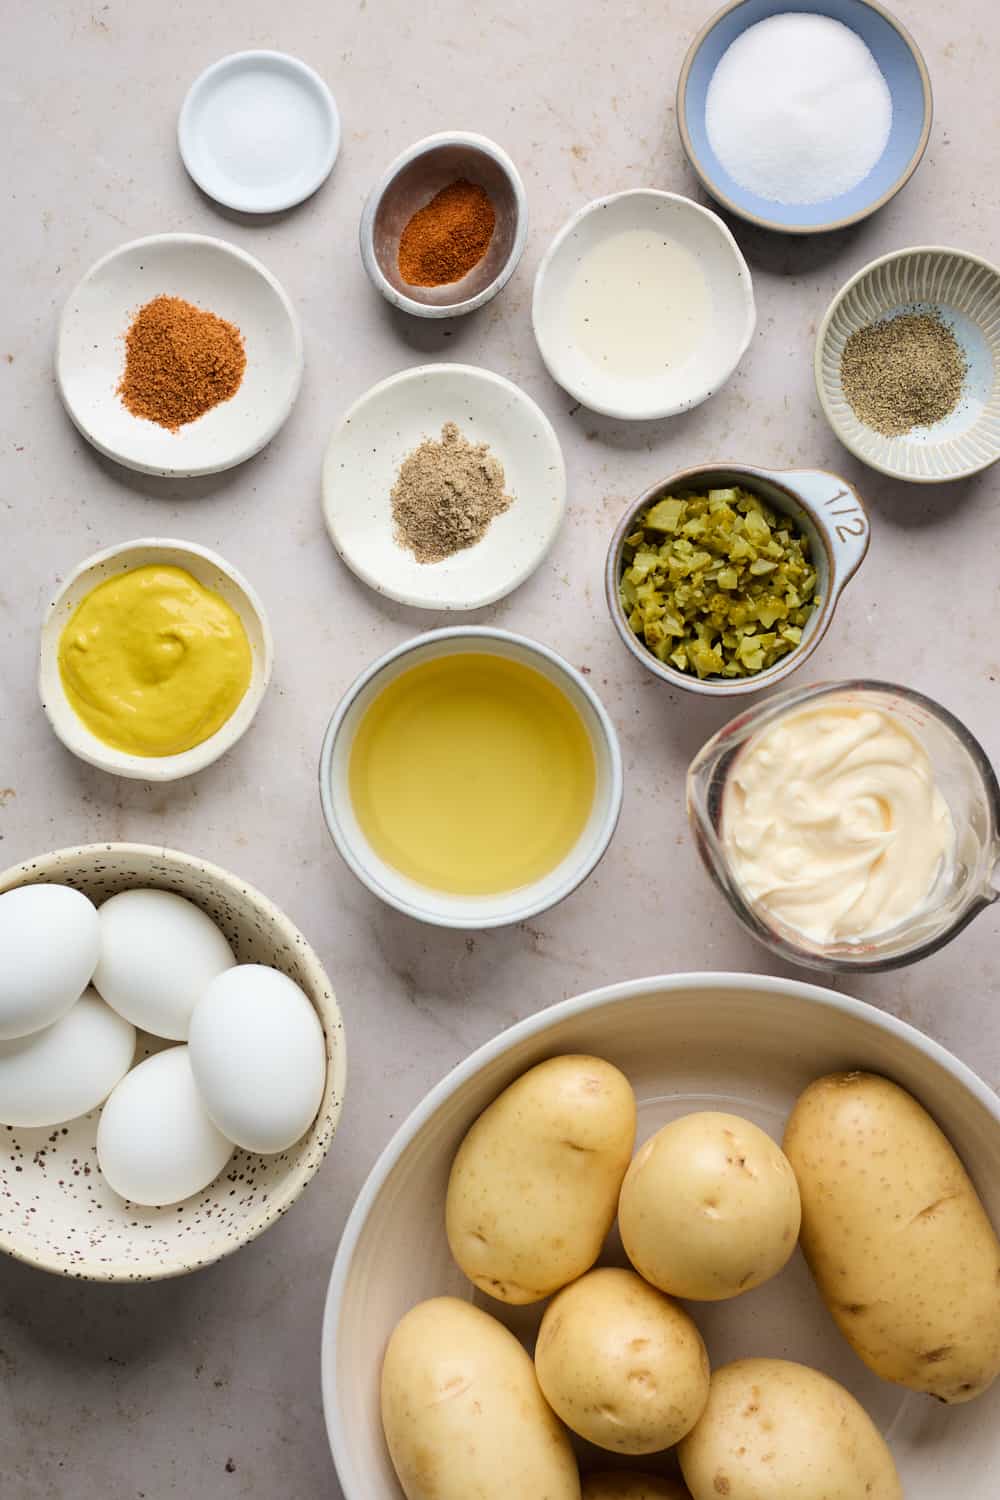 Ingredients to make potato salad recipe